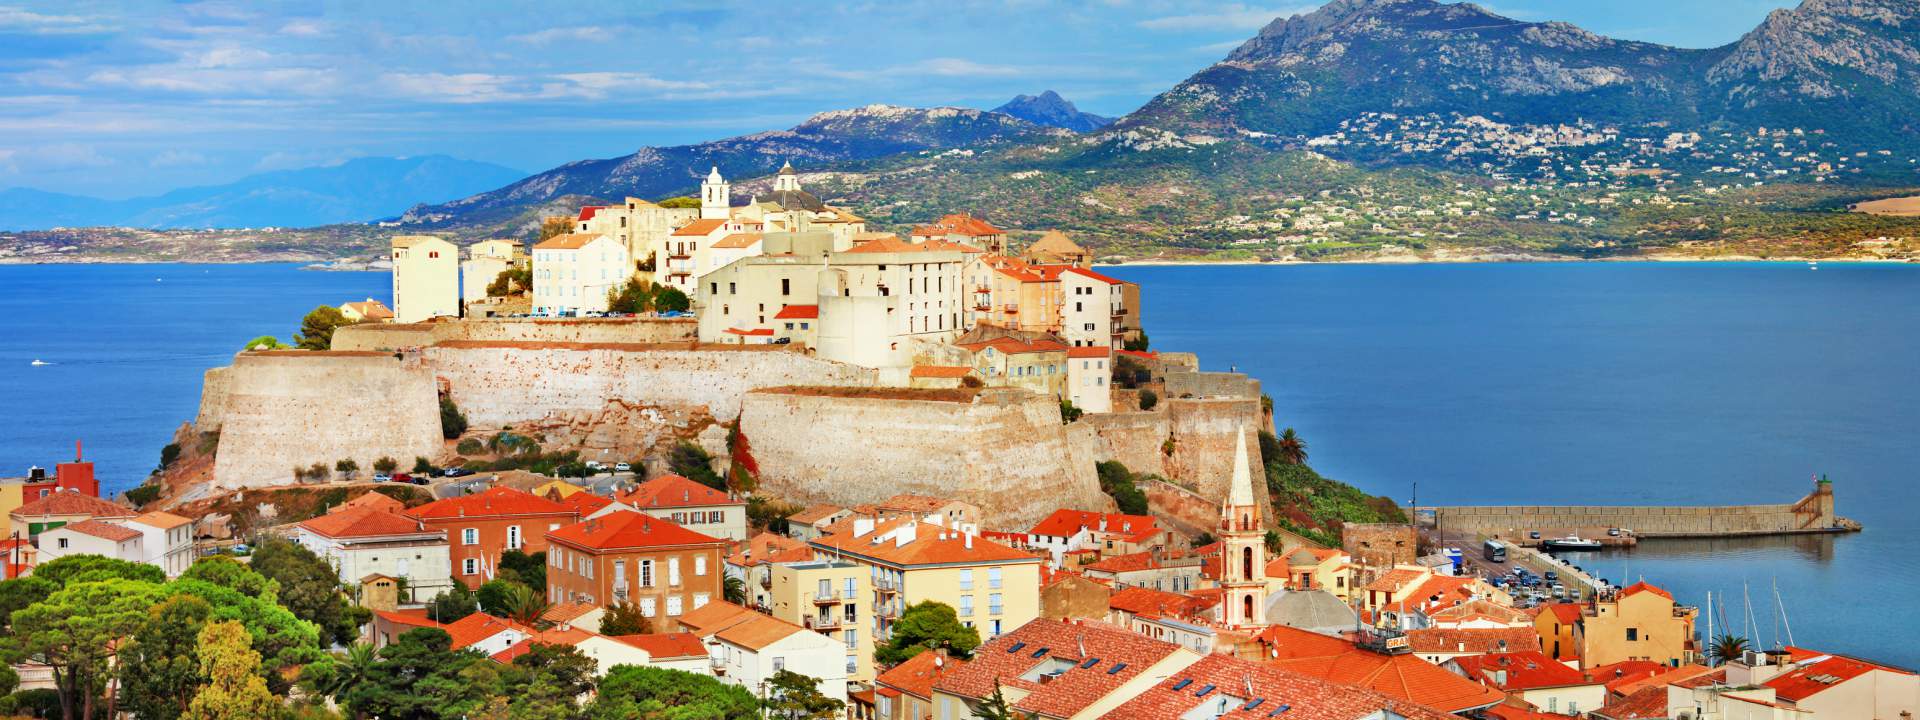 Le baie e i luoghi più belli della Corsica